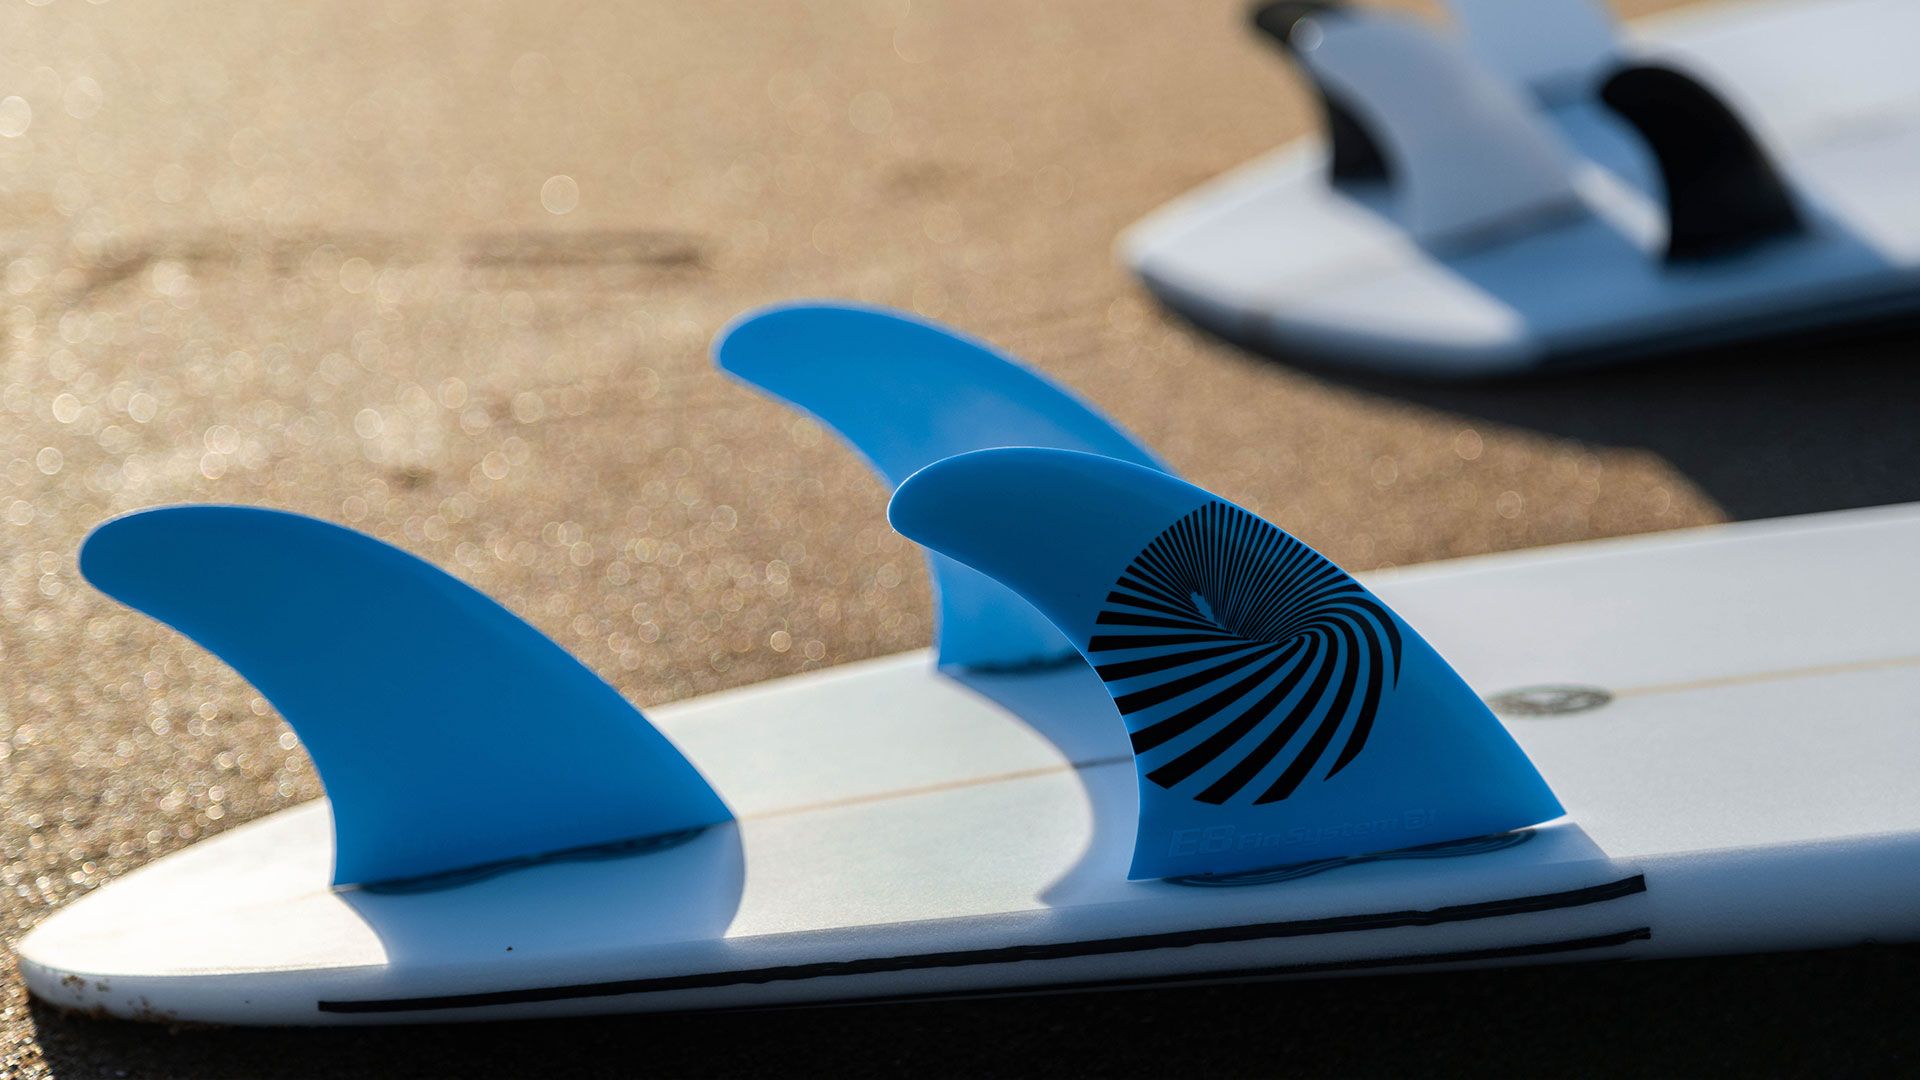 Quillas de surf de color azul, fcs compatibles y de la marca e8 fin system